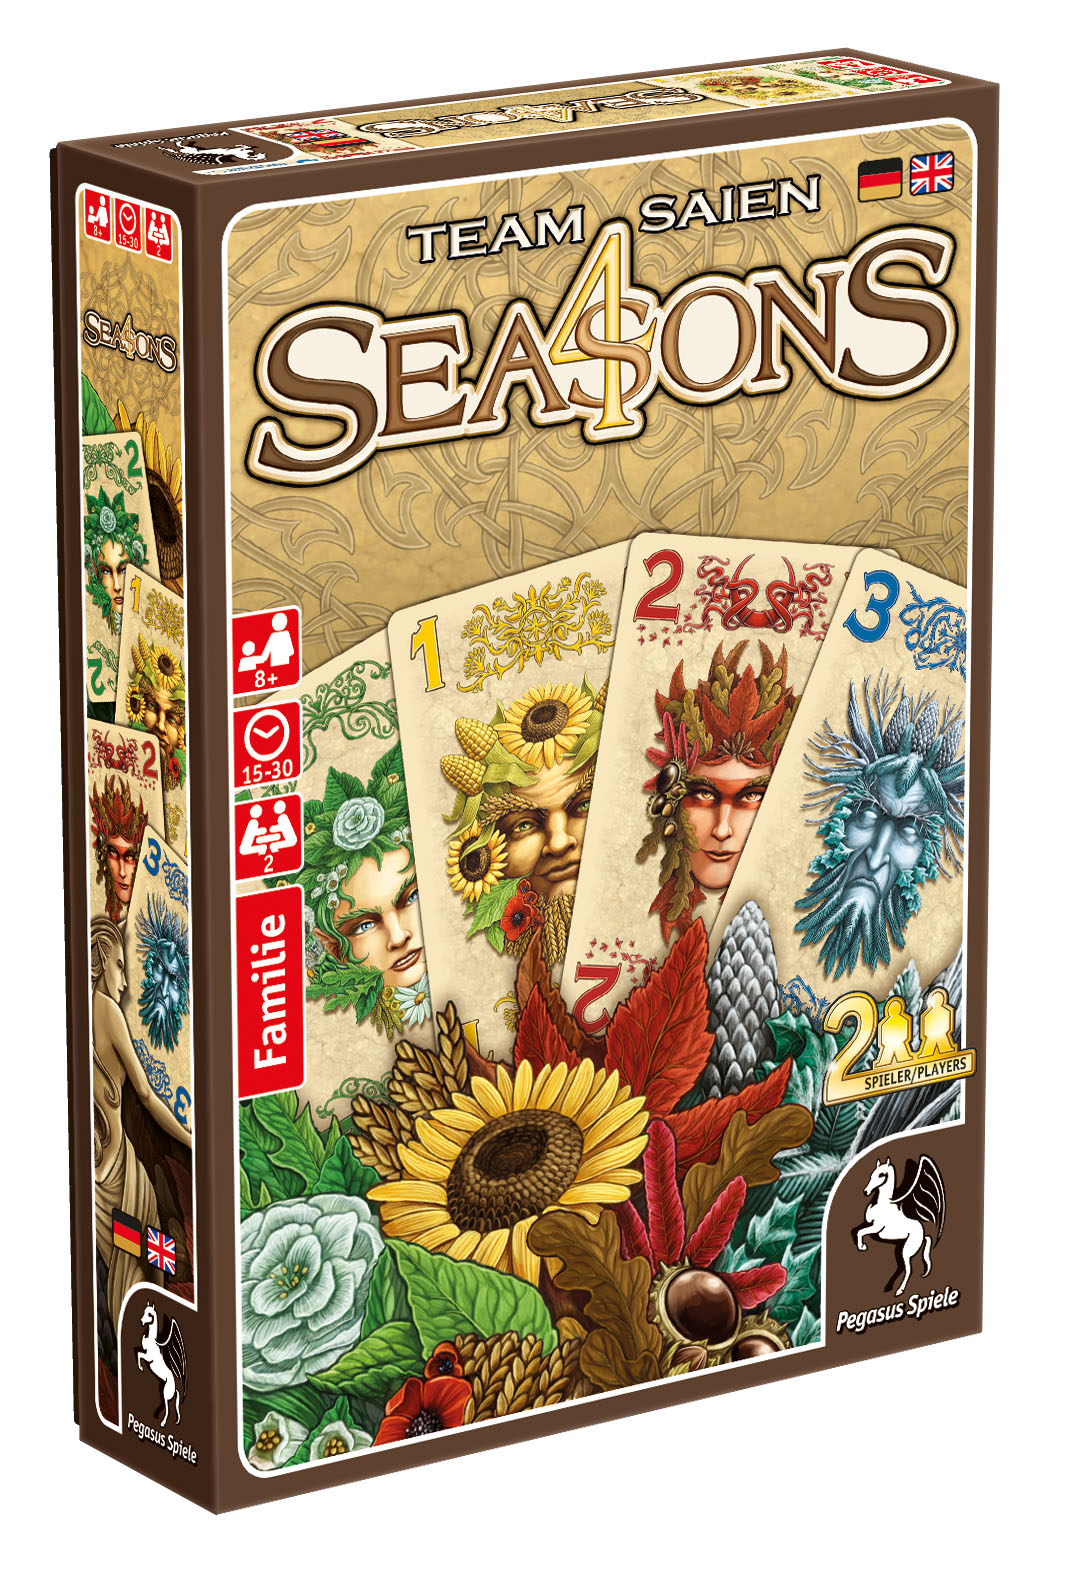 4 Seasons von Team Saien erscheint im April